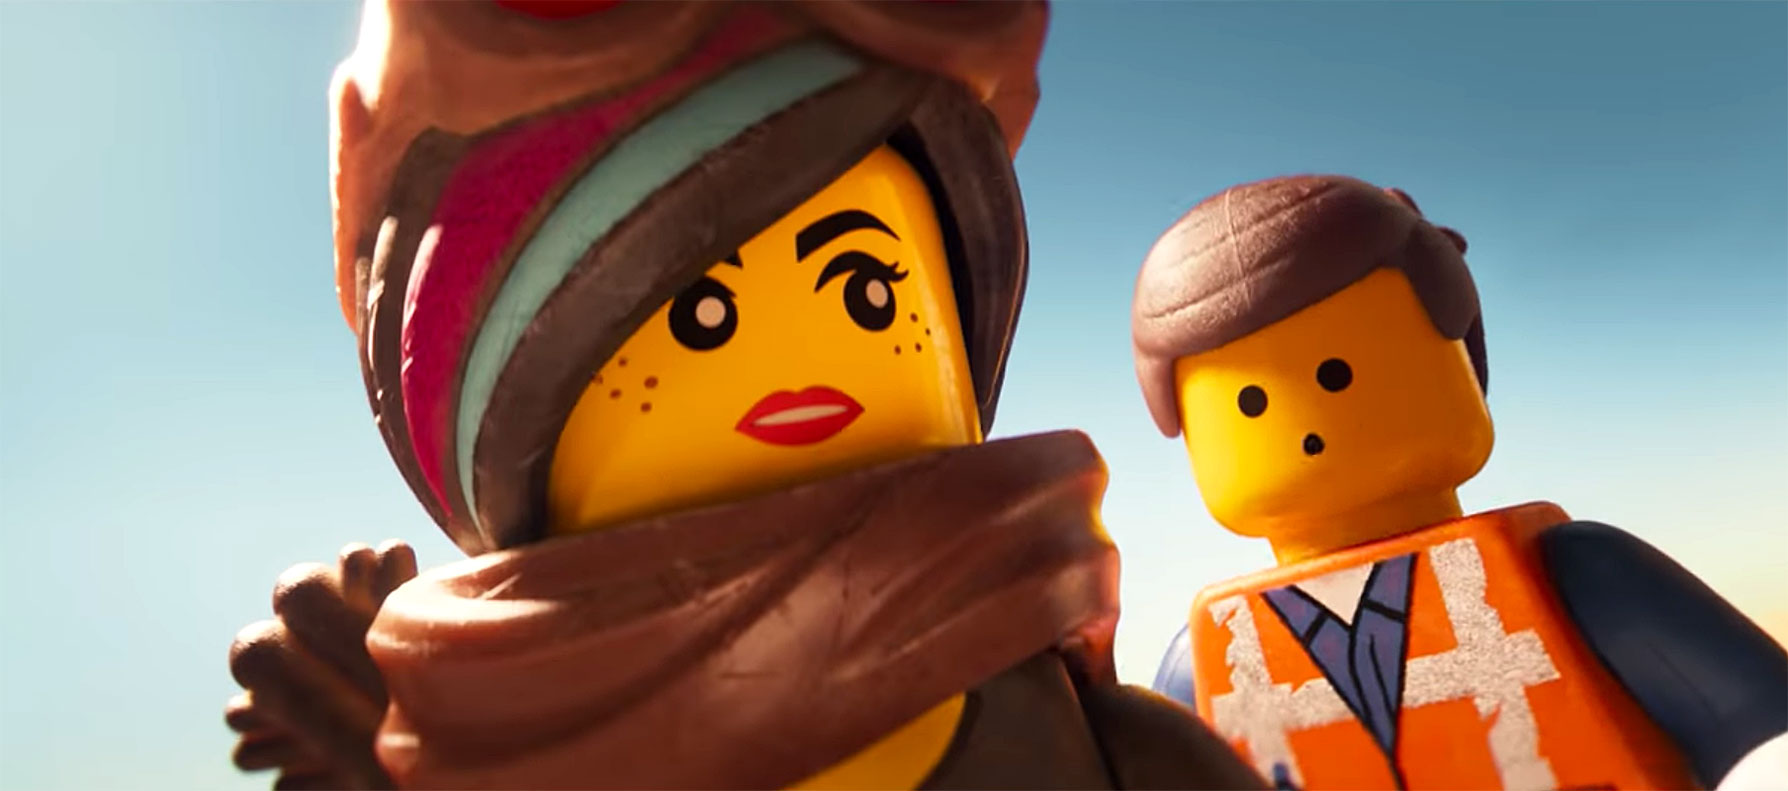 Byg op serviet Underholde Lego Movie 2' Gets 3 Stars: Read the Review!